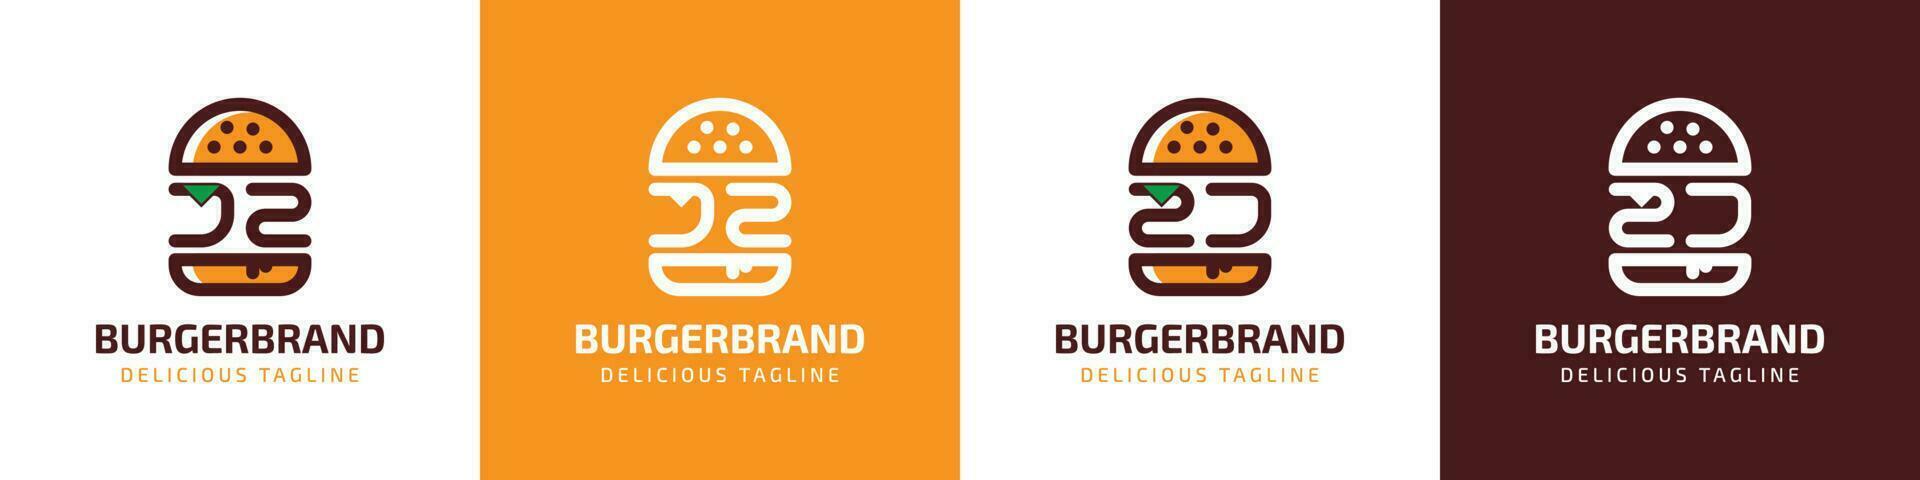 lettera jz e zj hamburger logo, adatto per qualunque attività commerciale relazionato per hamburger con jz o zj iniziali. vettore